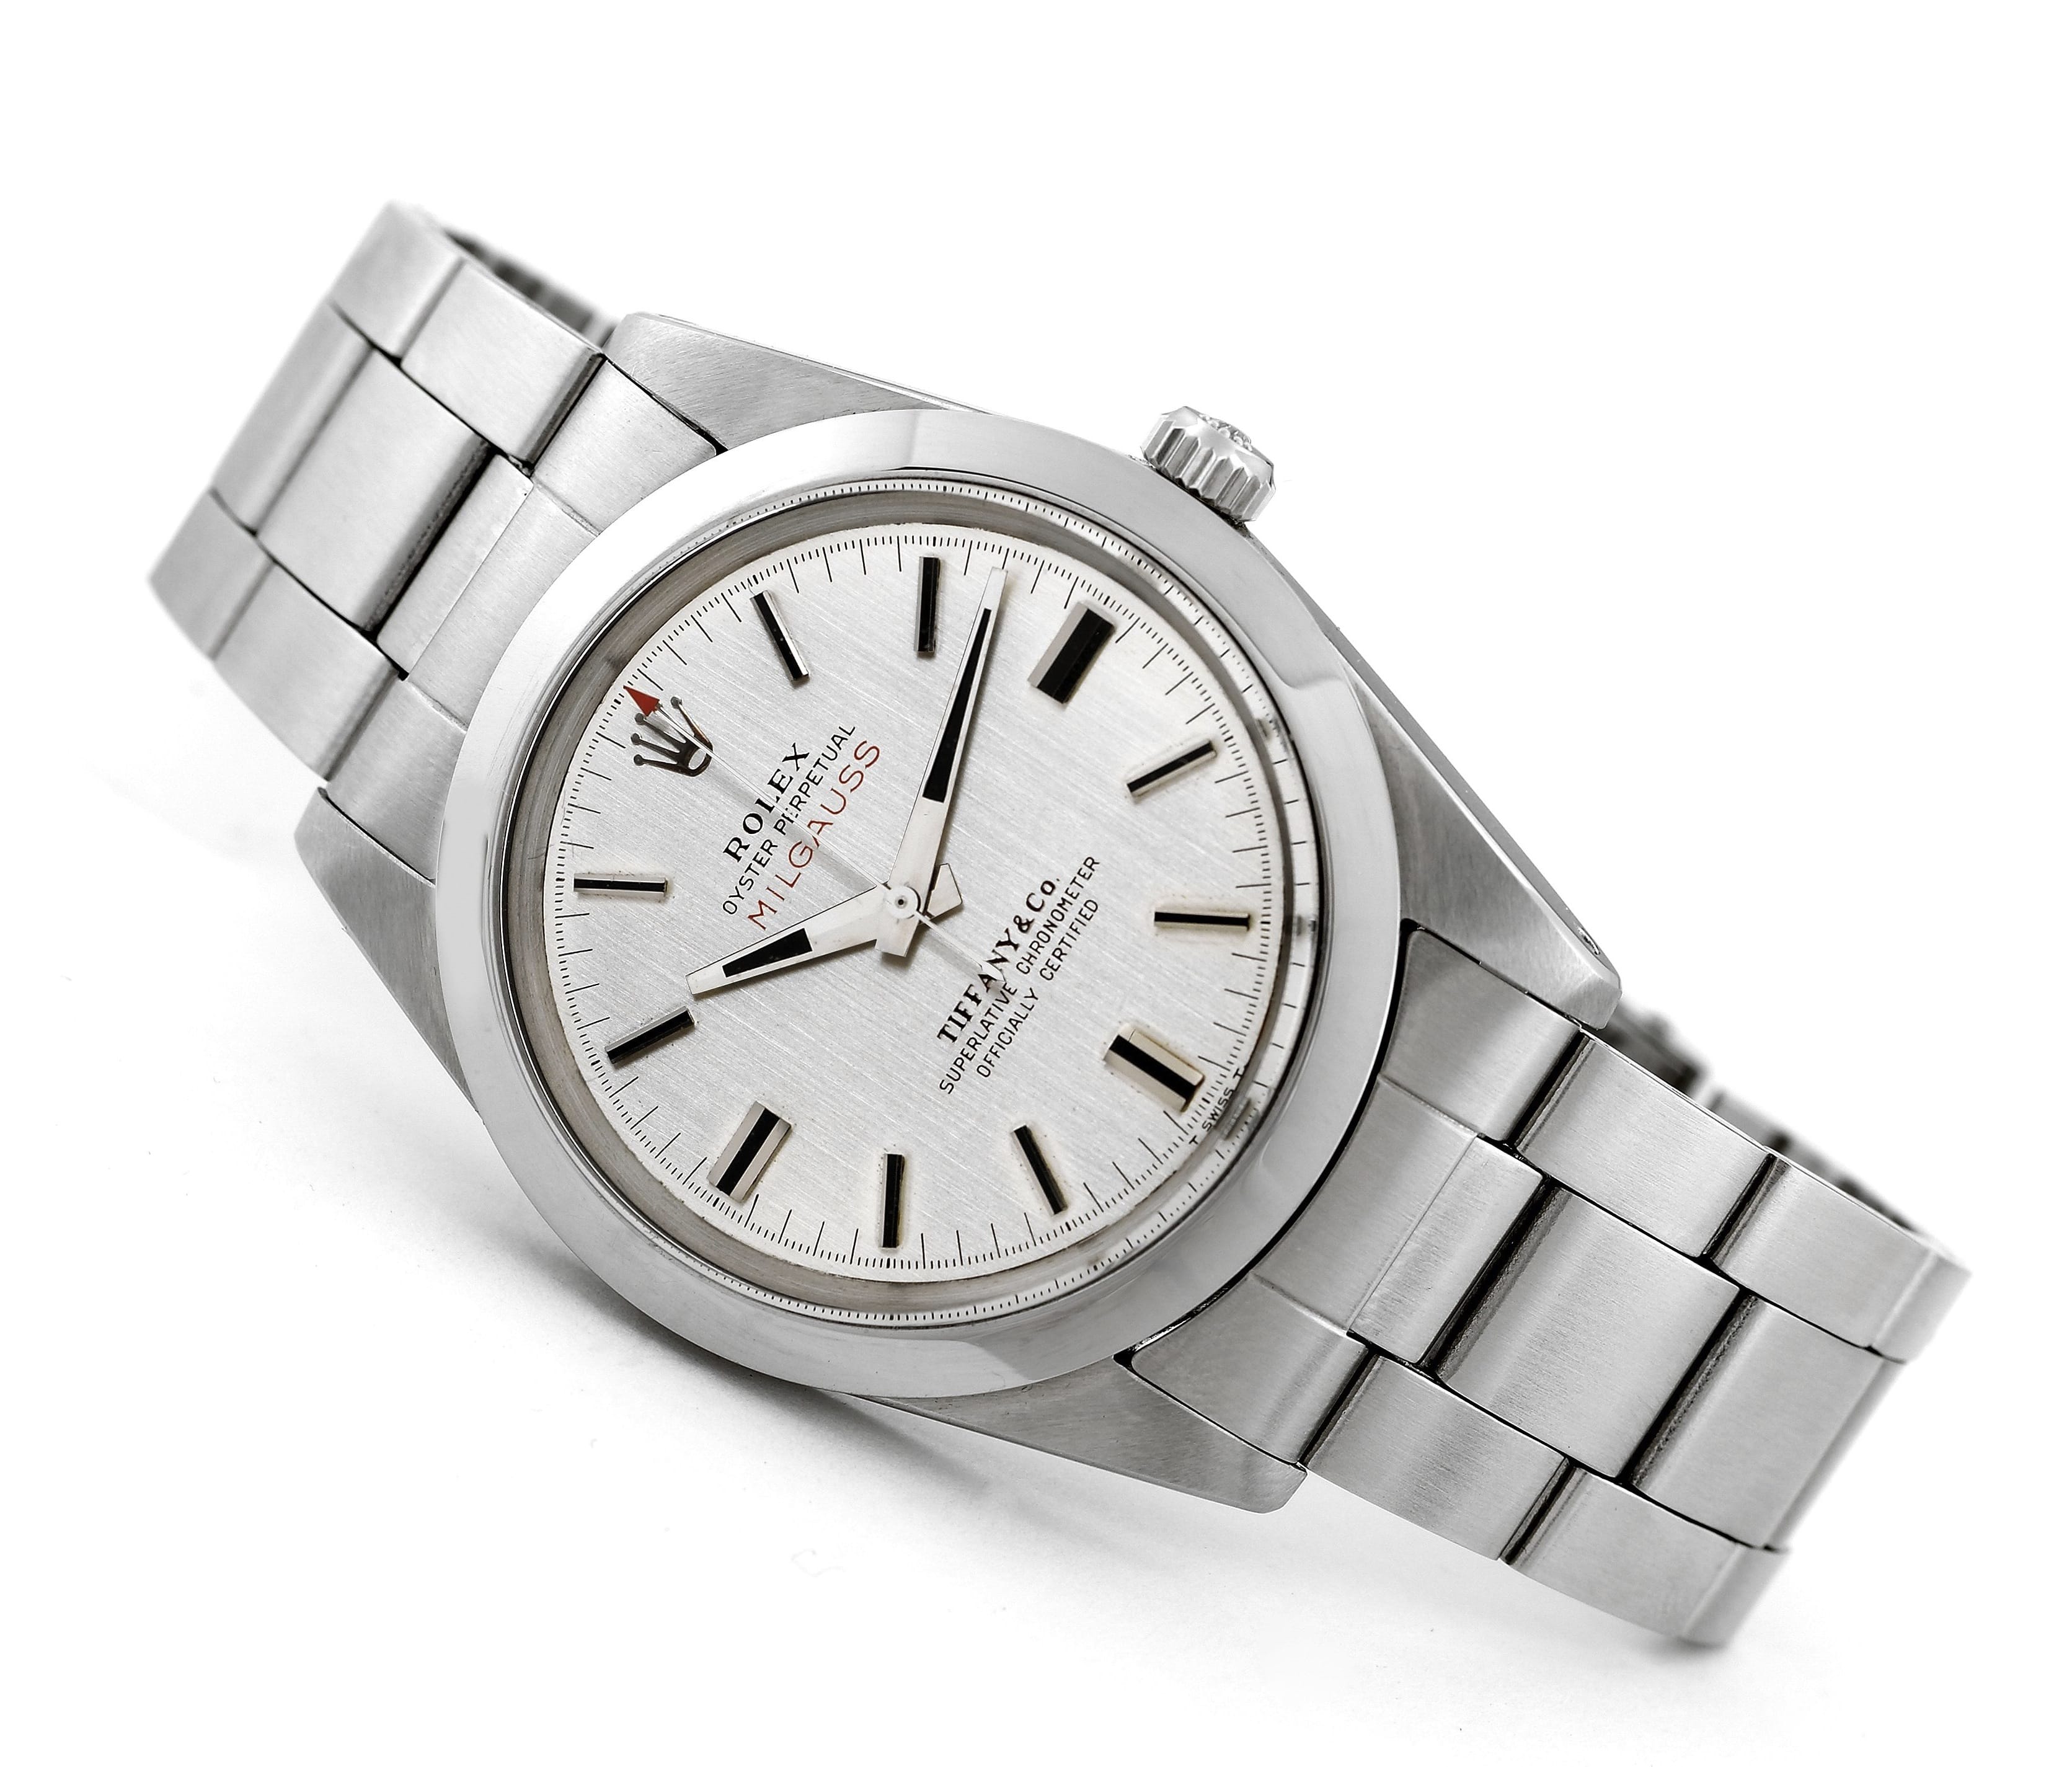 The Vintage Rolex Milgauss 1019 - Watch